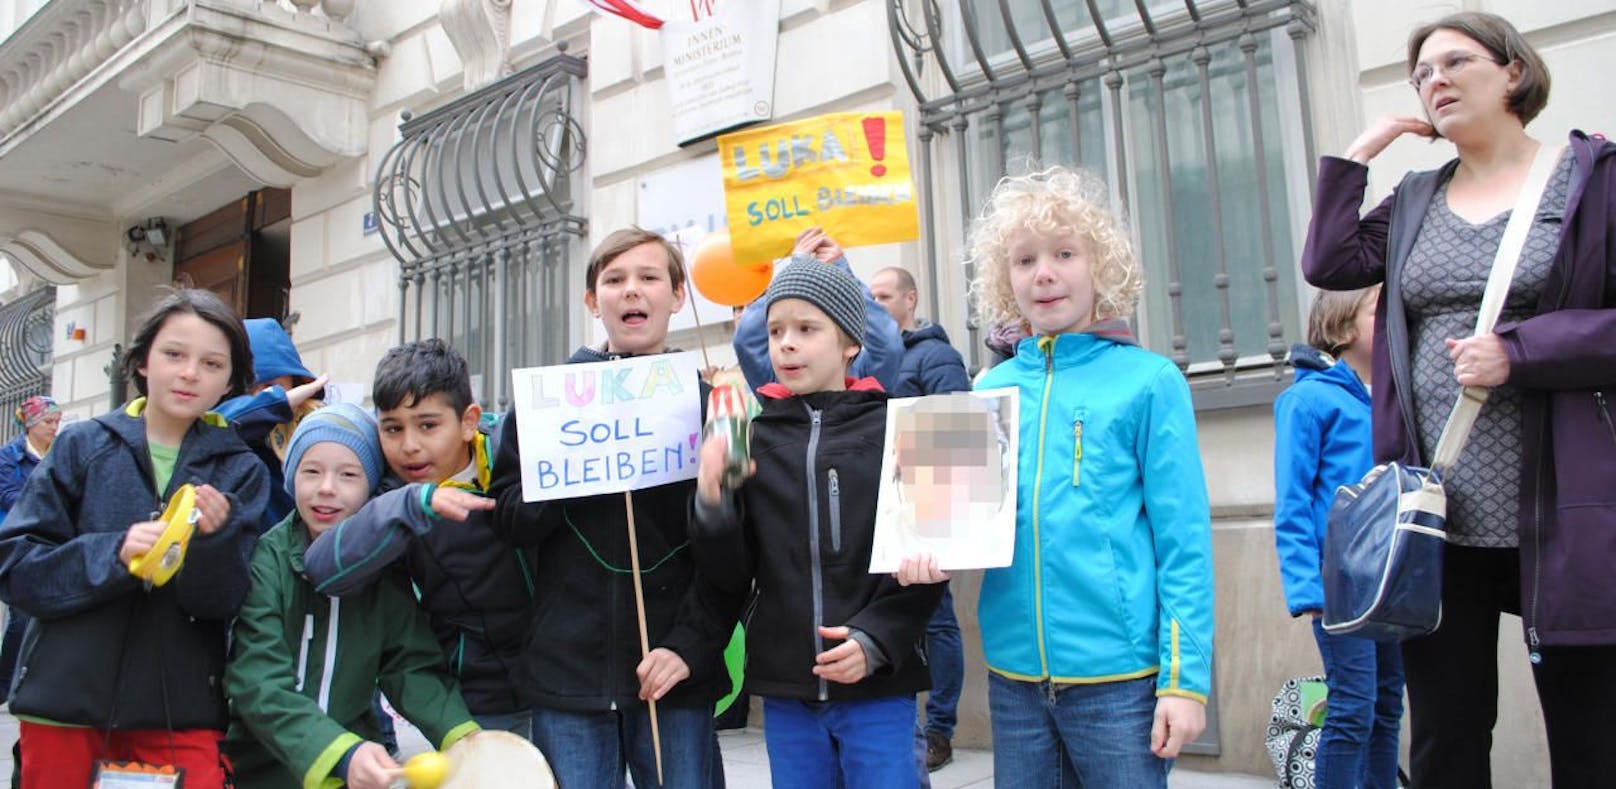 Kids gegen Abschiebung: "Luka soll bleiben!"